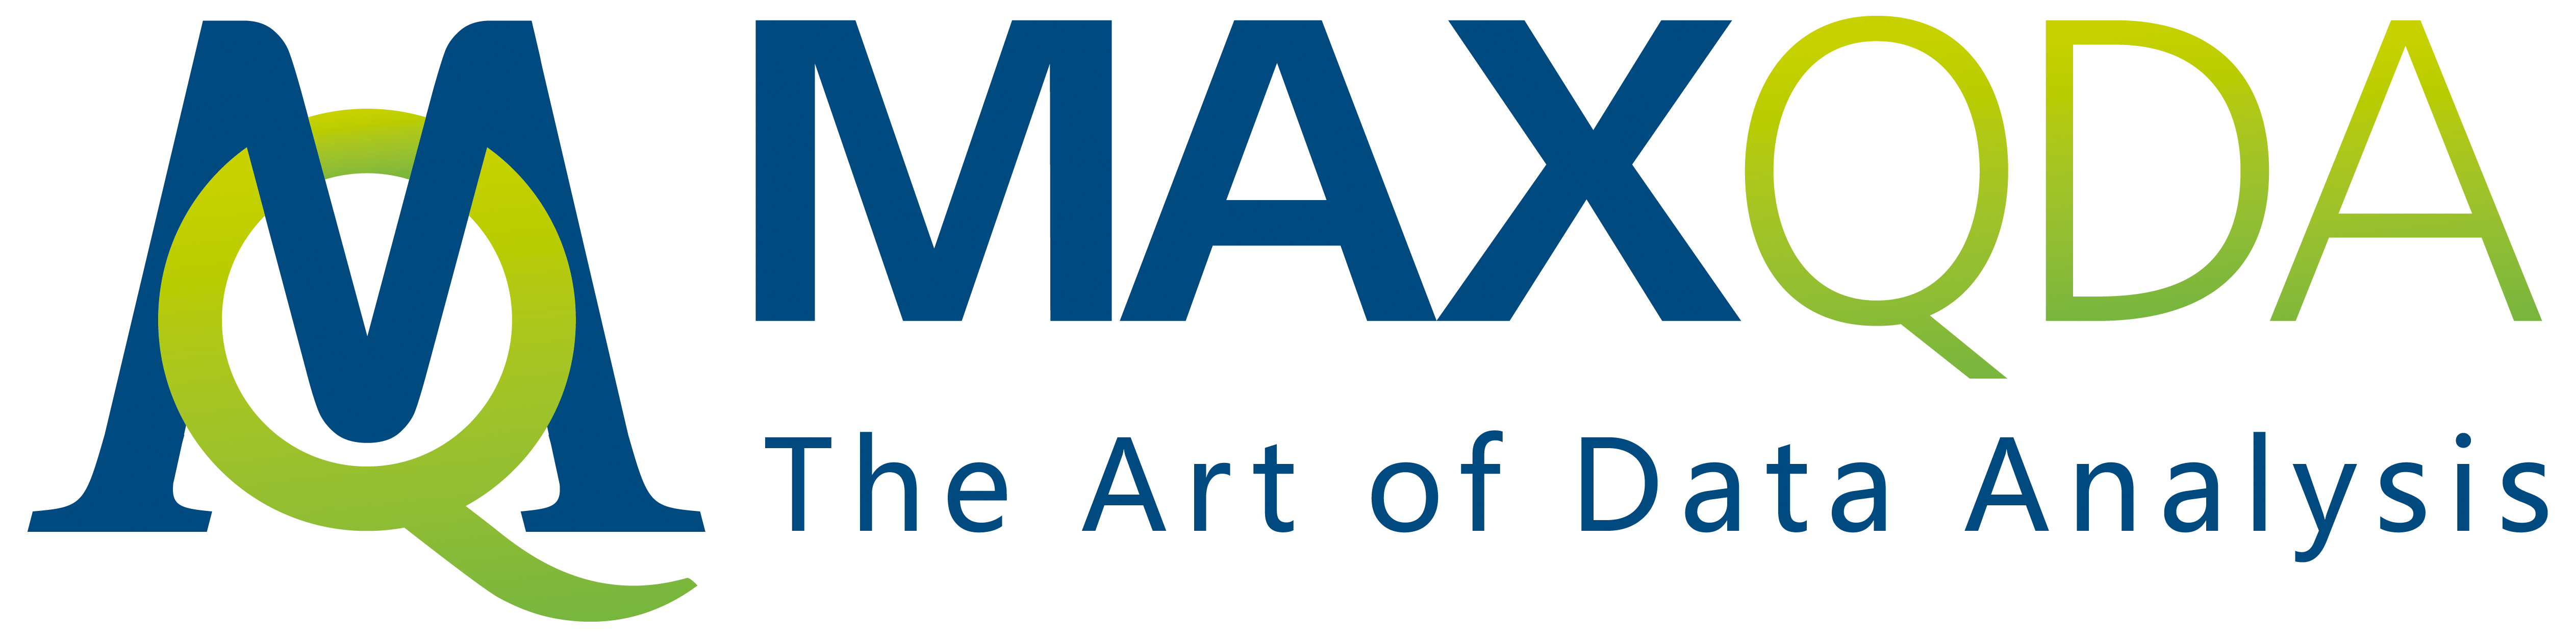 MAXQDA Plus center